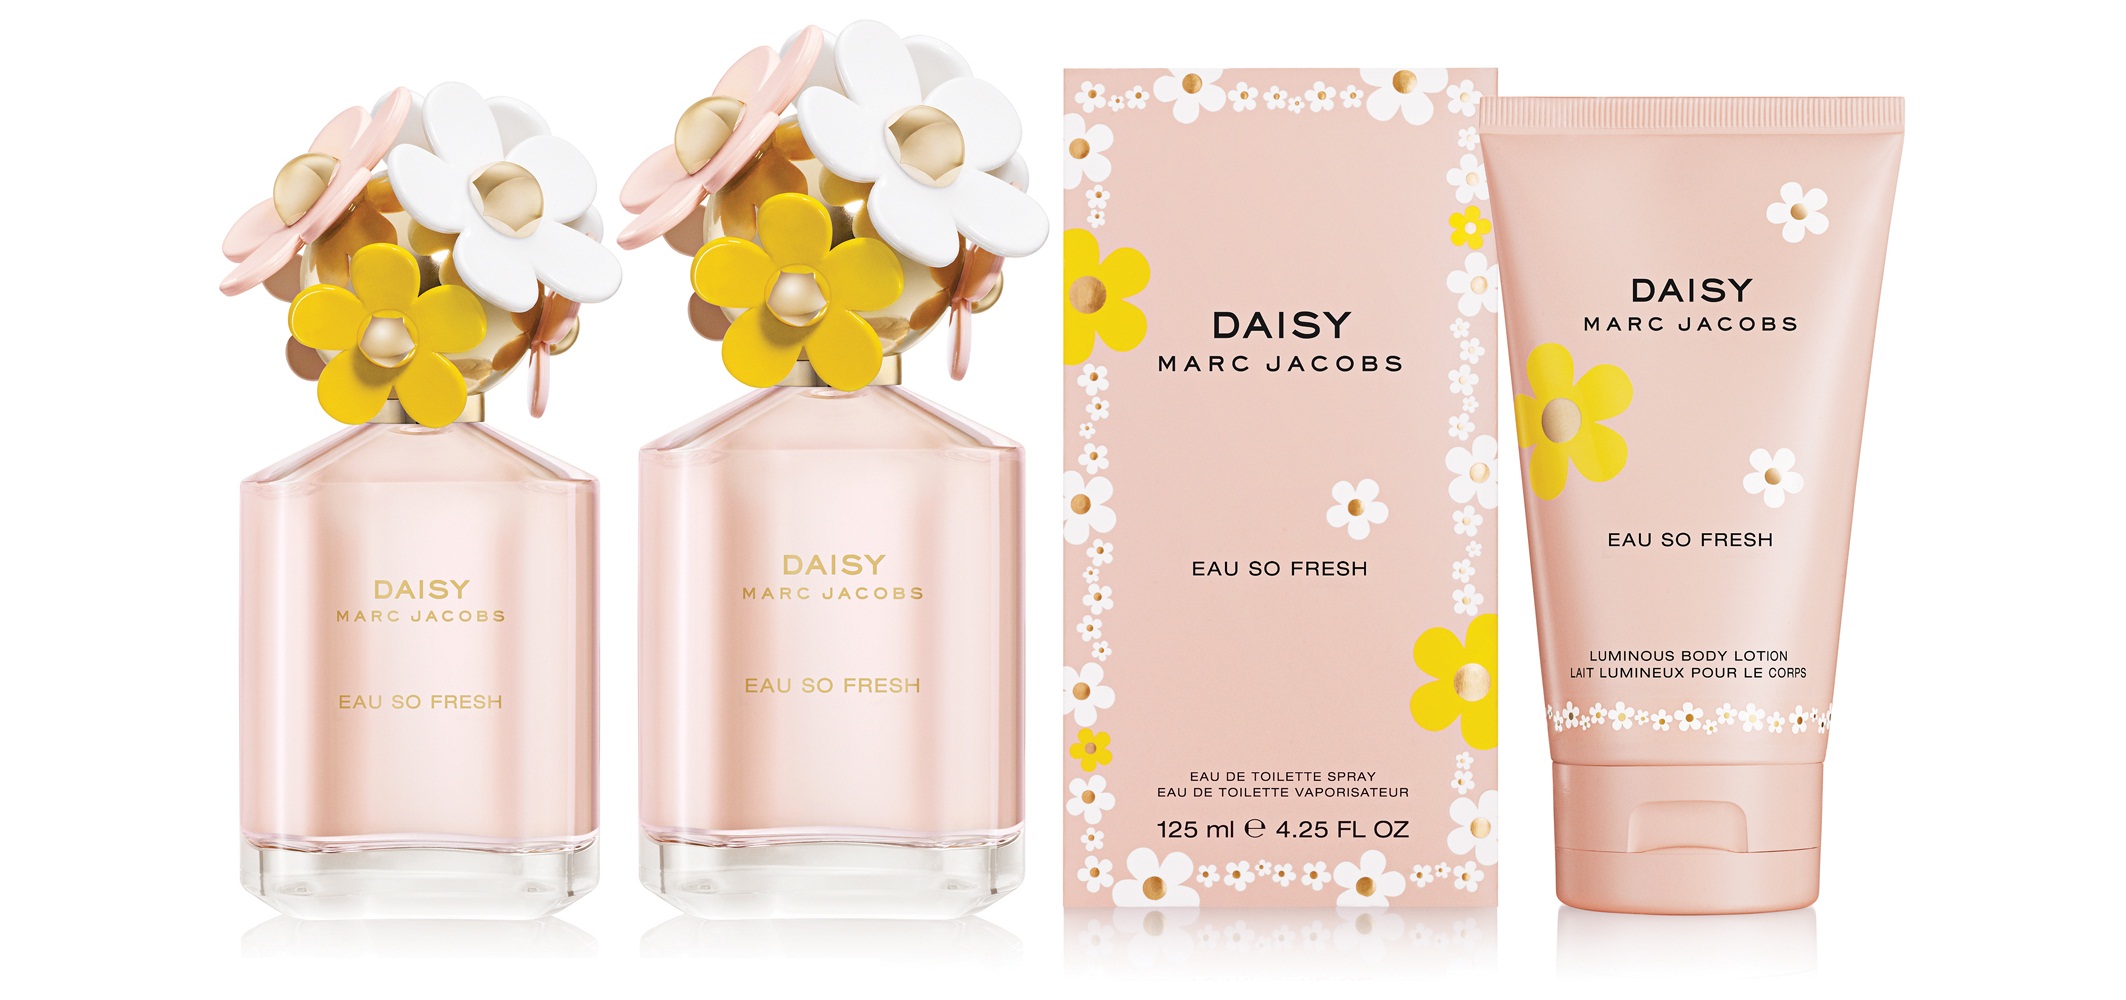 Daisy Eau So Fresh by Marc Jacobs | StyleLab